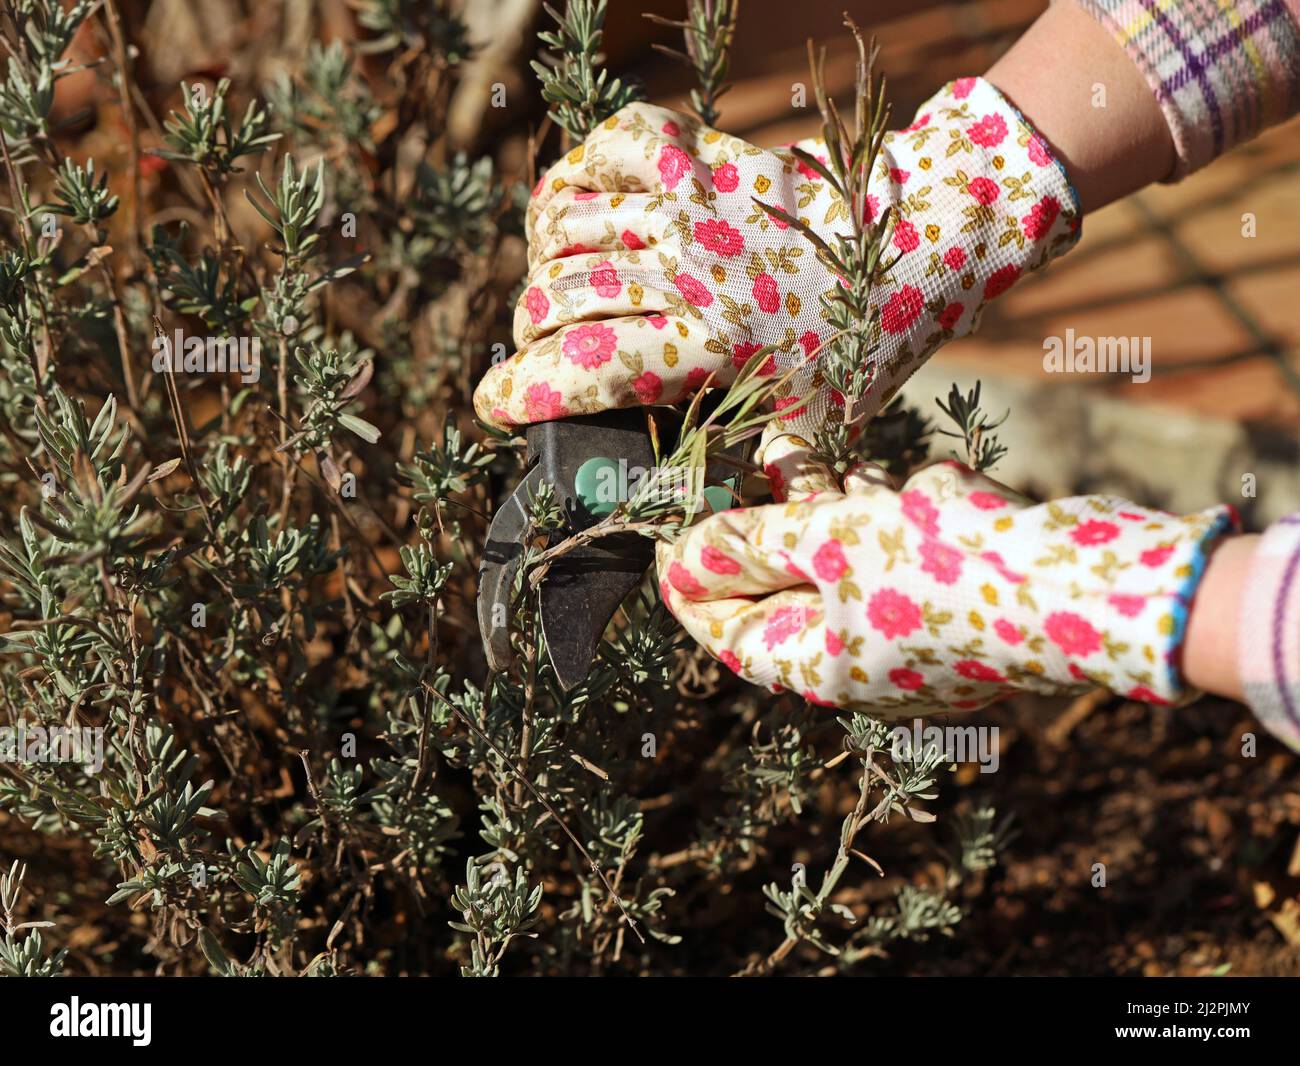 la main femelle en gants de fleur tient le sécateur de dérivation et coupe le buisson de lavande, gros plan de travail saisonnier dans le jardin Banque D'Images